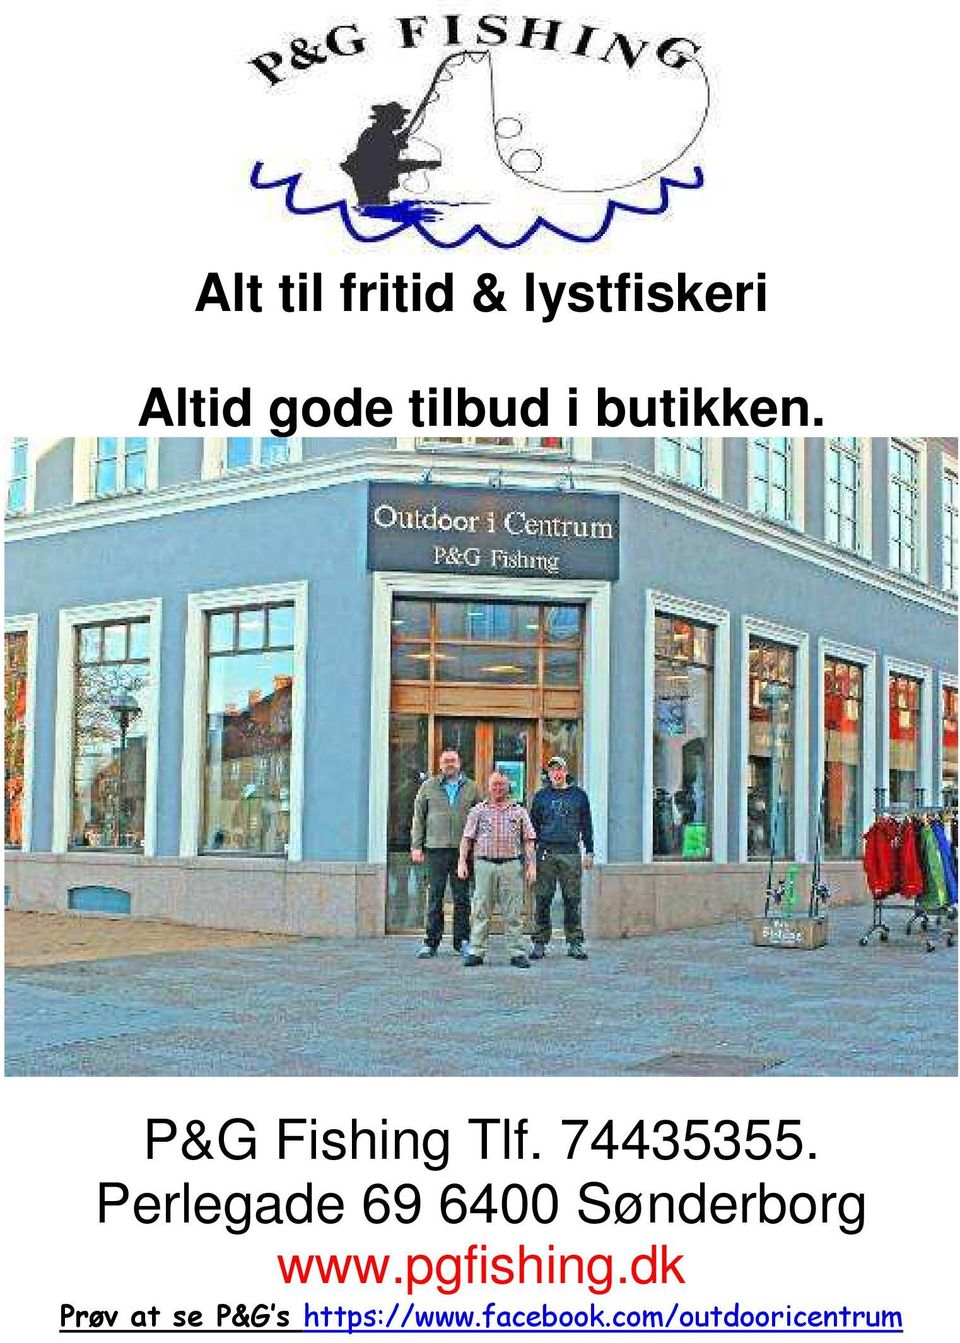 Perlegade 69 6400 Sønderborg www.pgfishing.